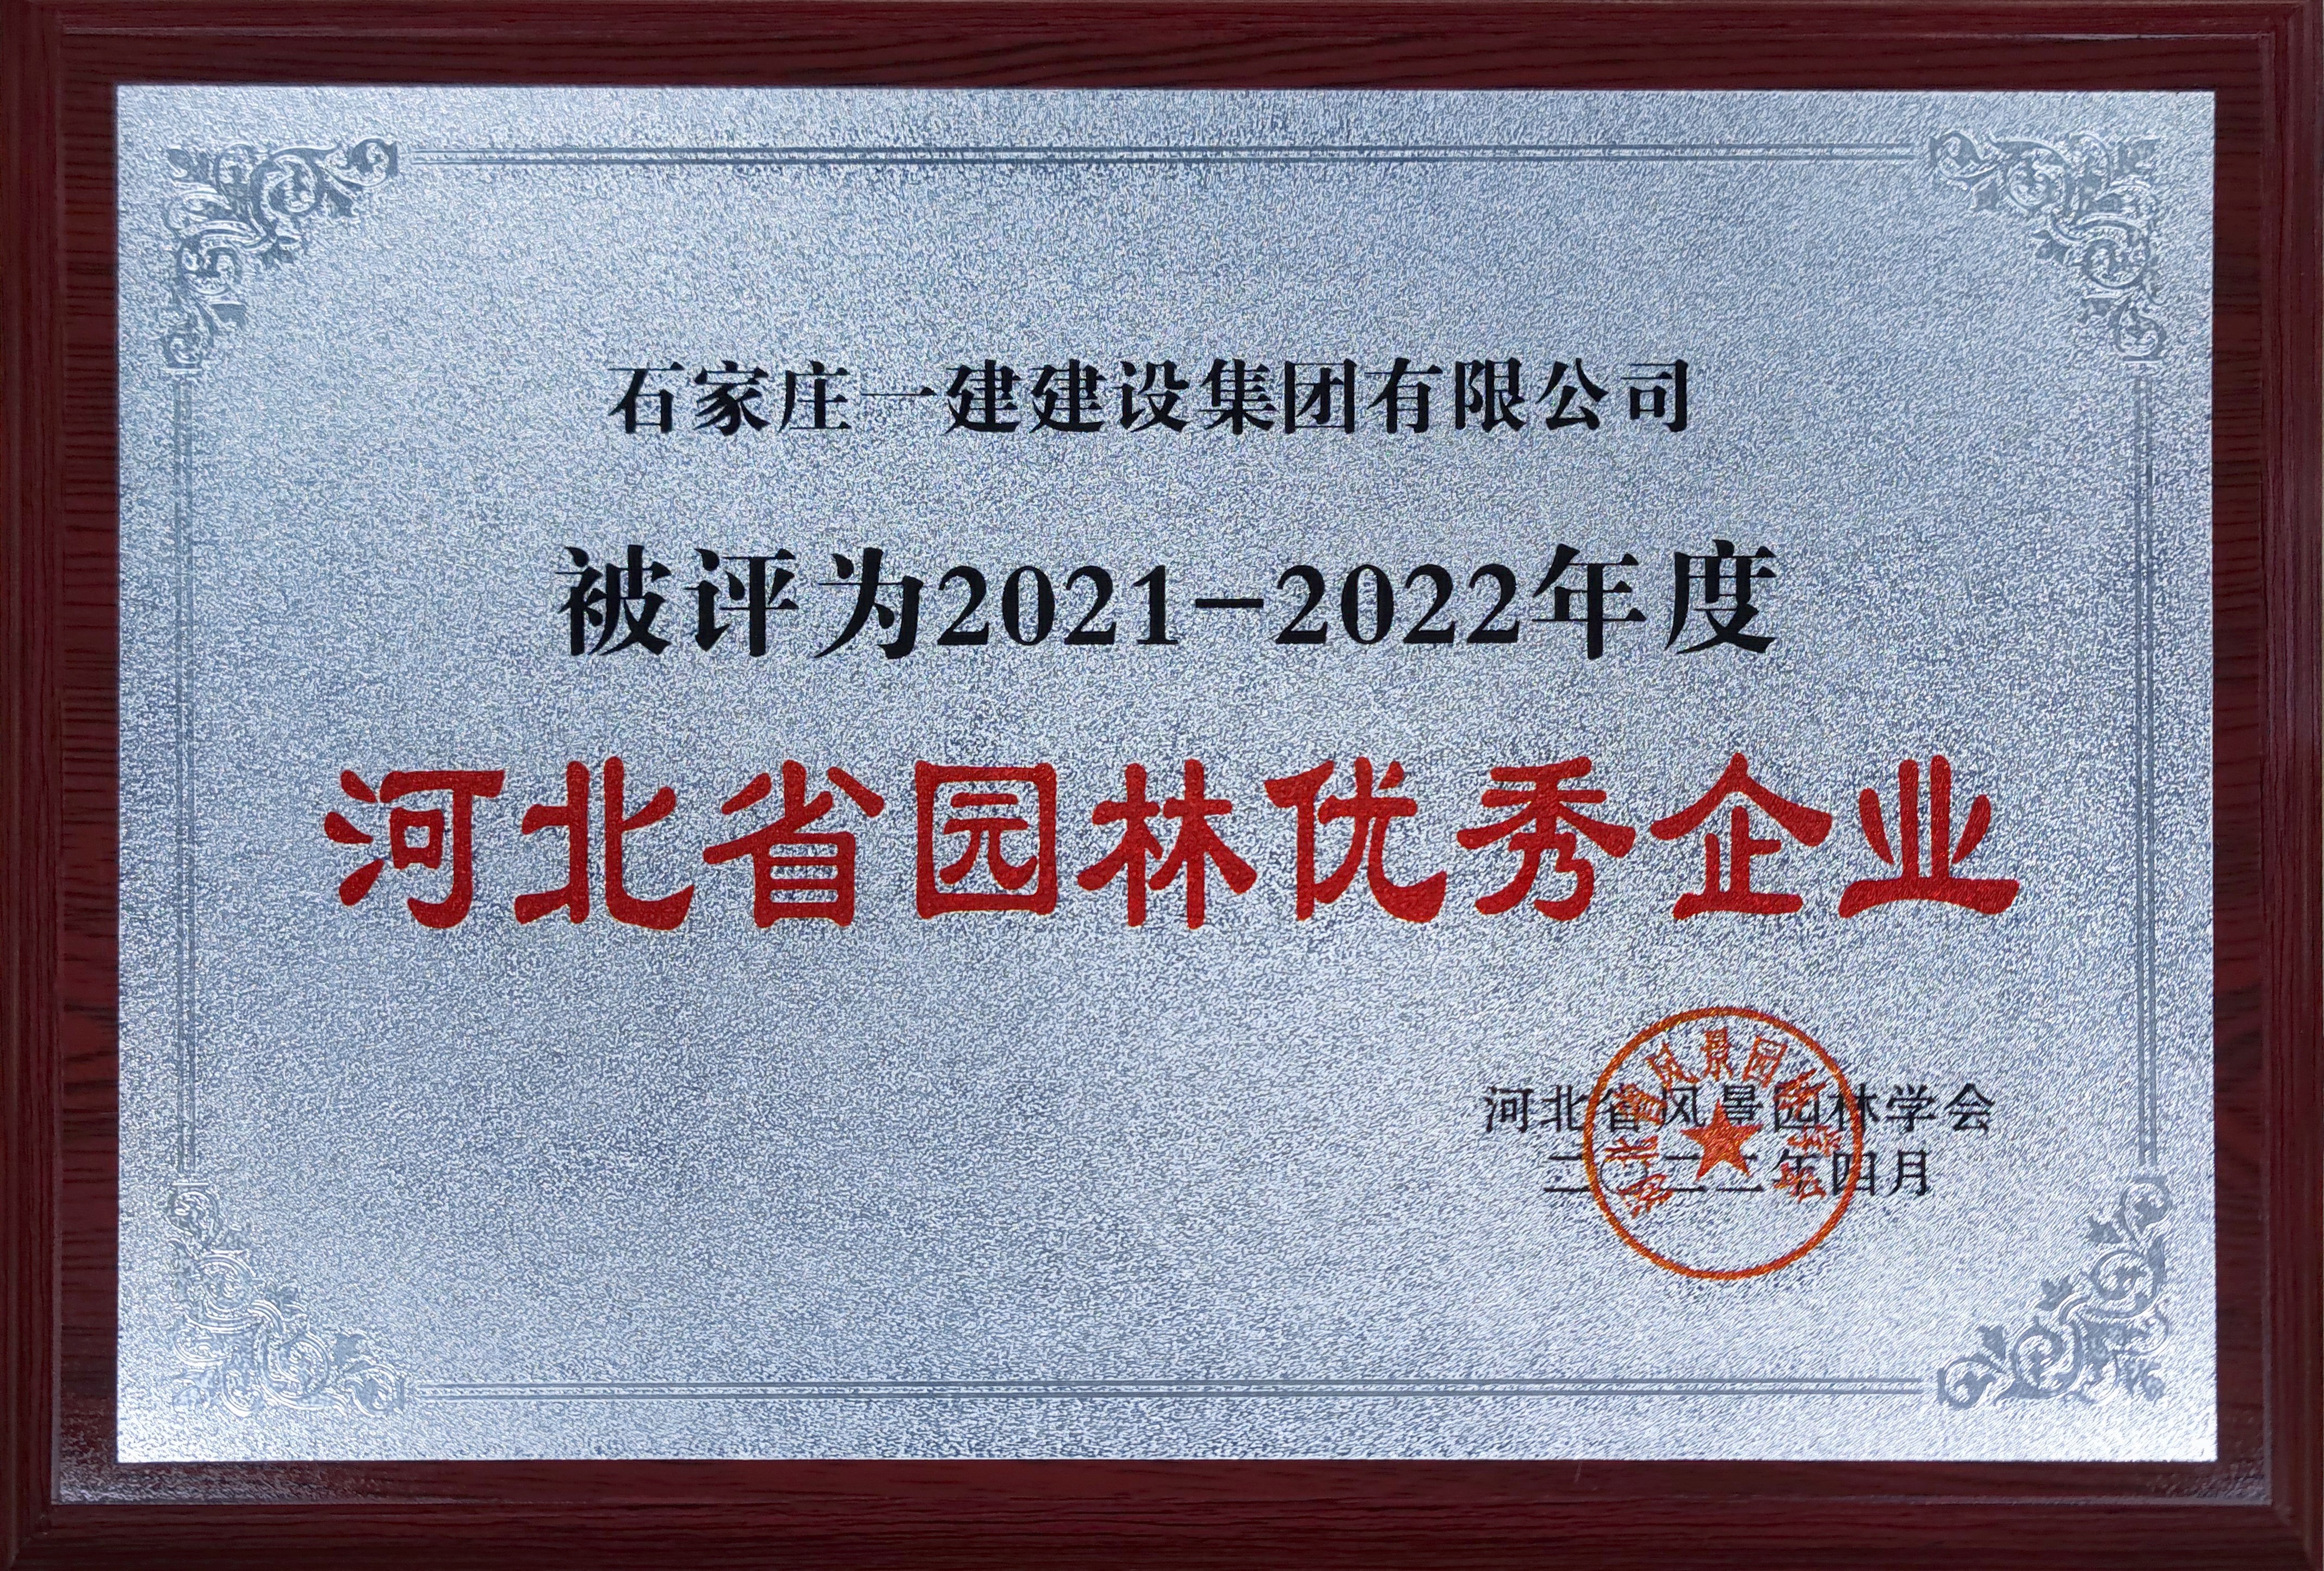 2021-2022年度河北省園林優秀企業